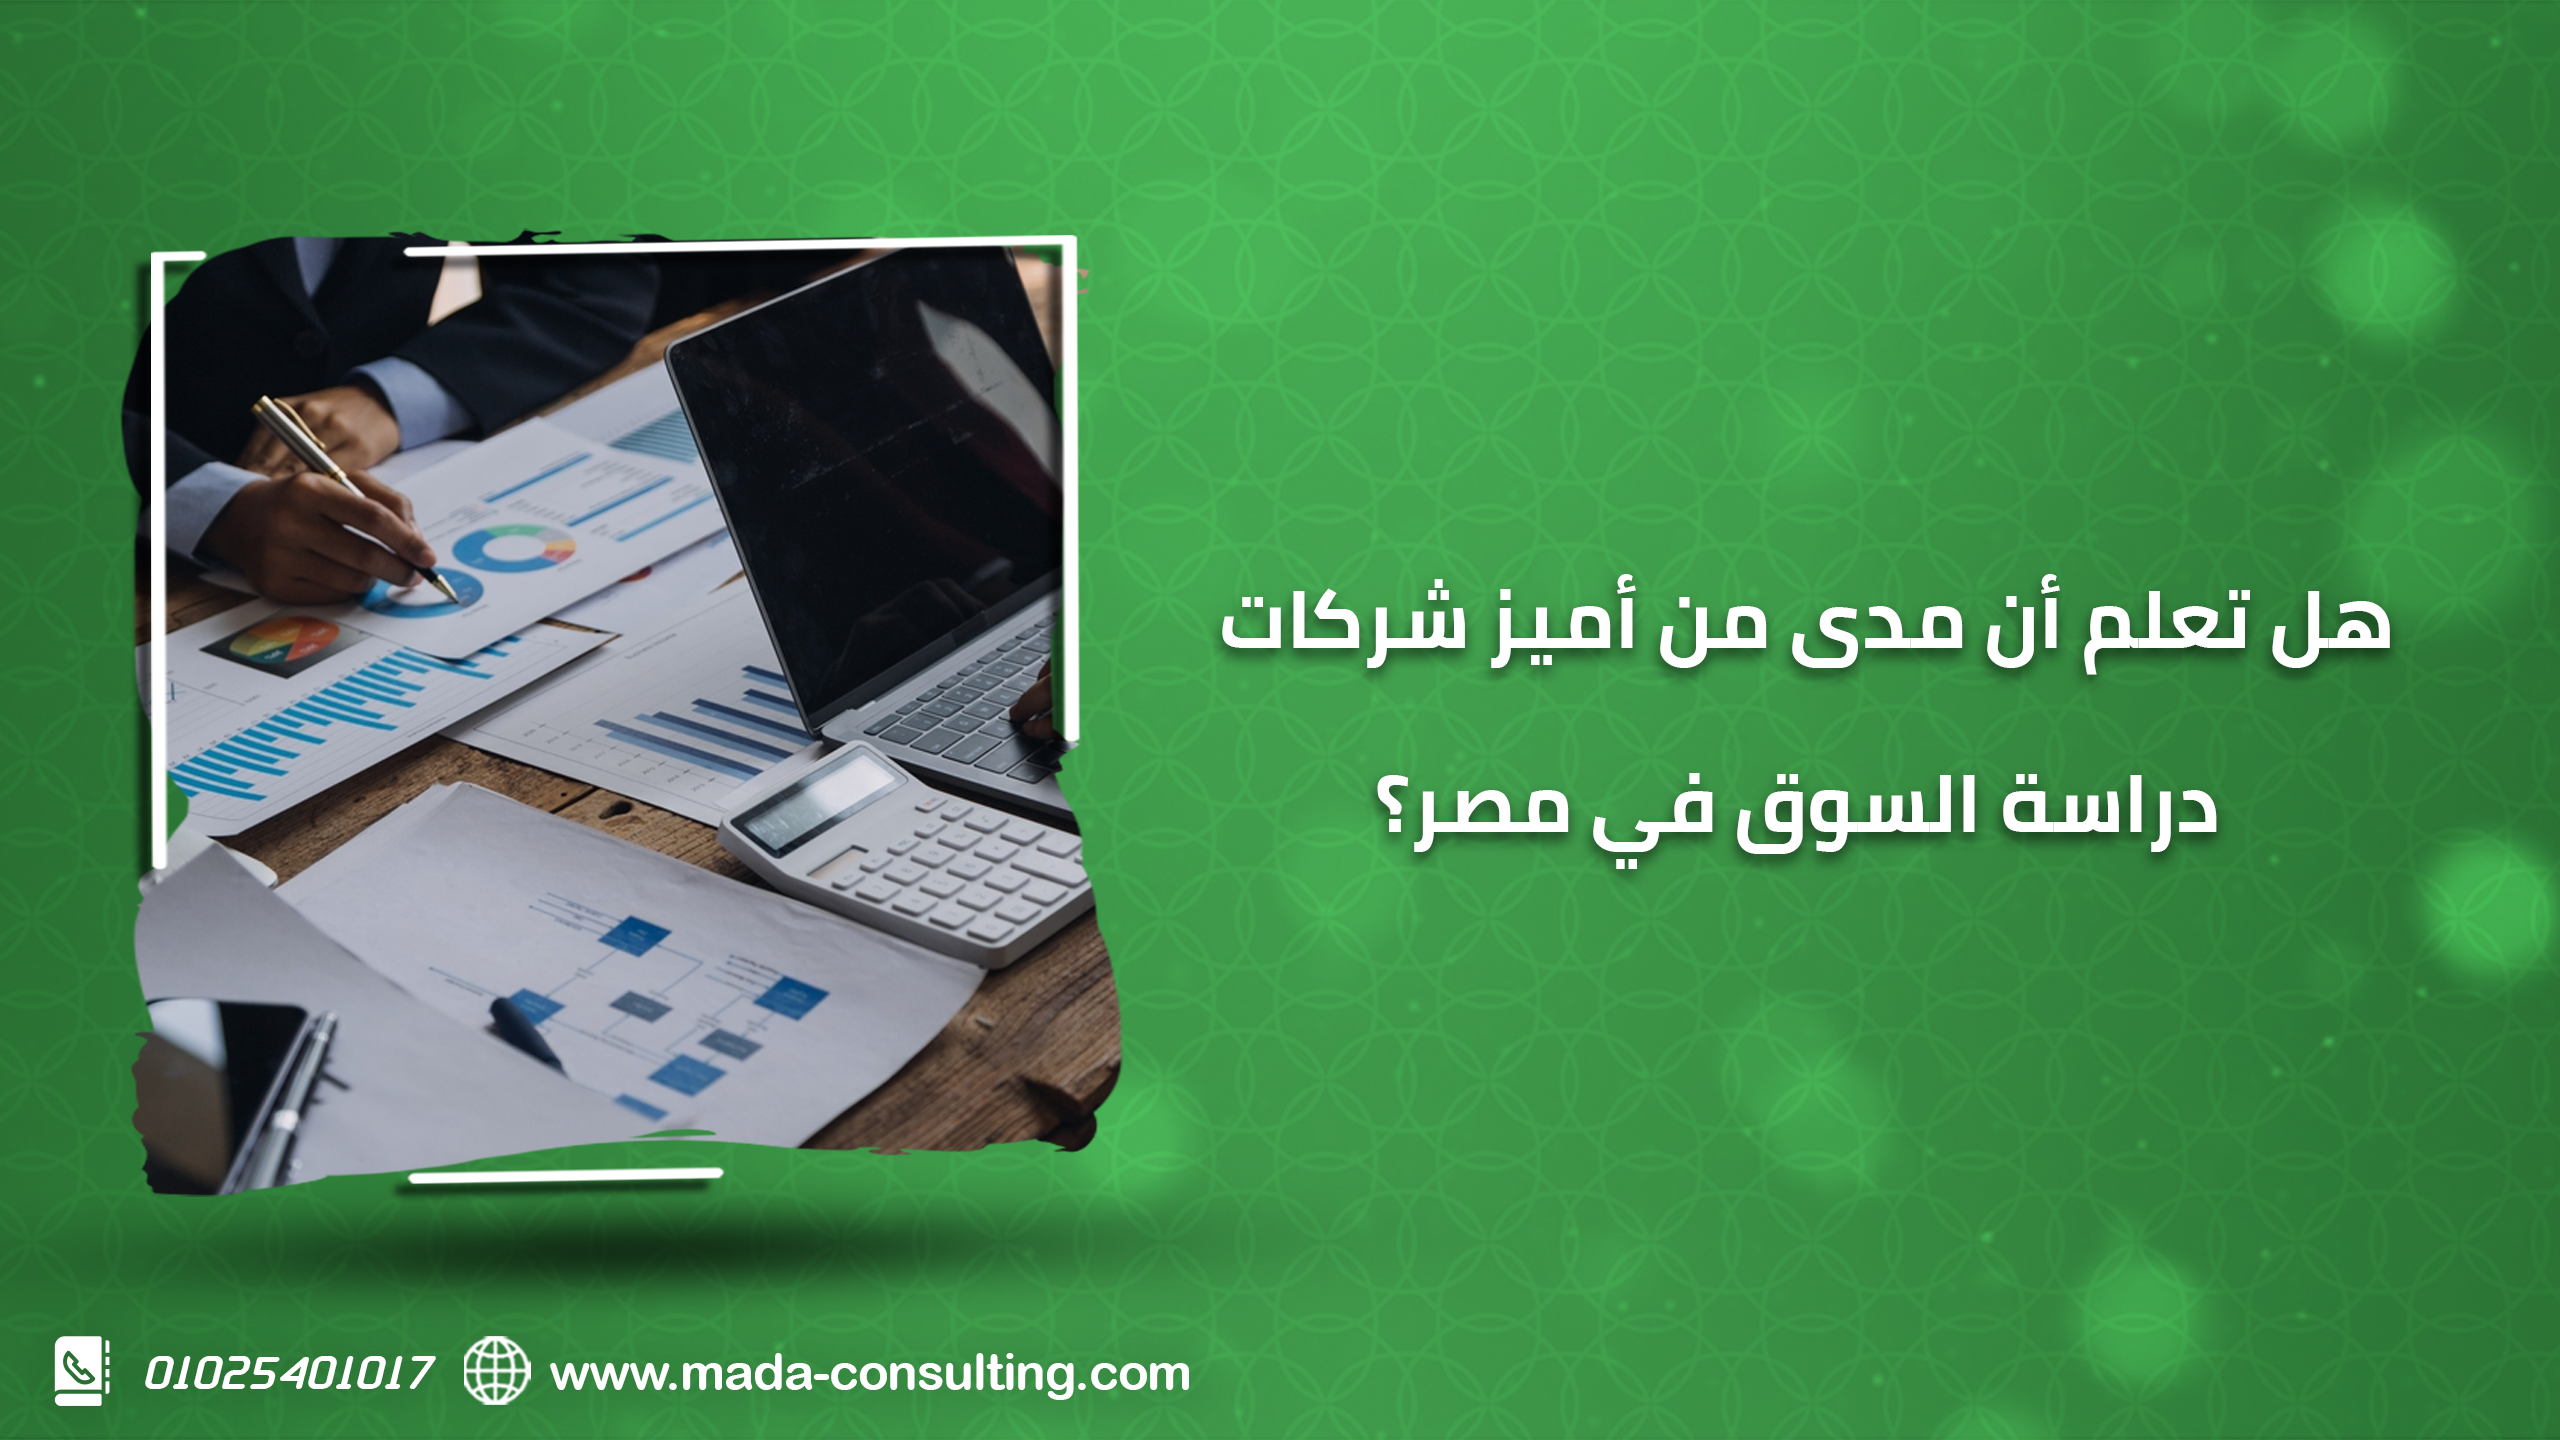 هل تعلم أن مدى من أميز شركات دراسة السوق في مصر؟